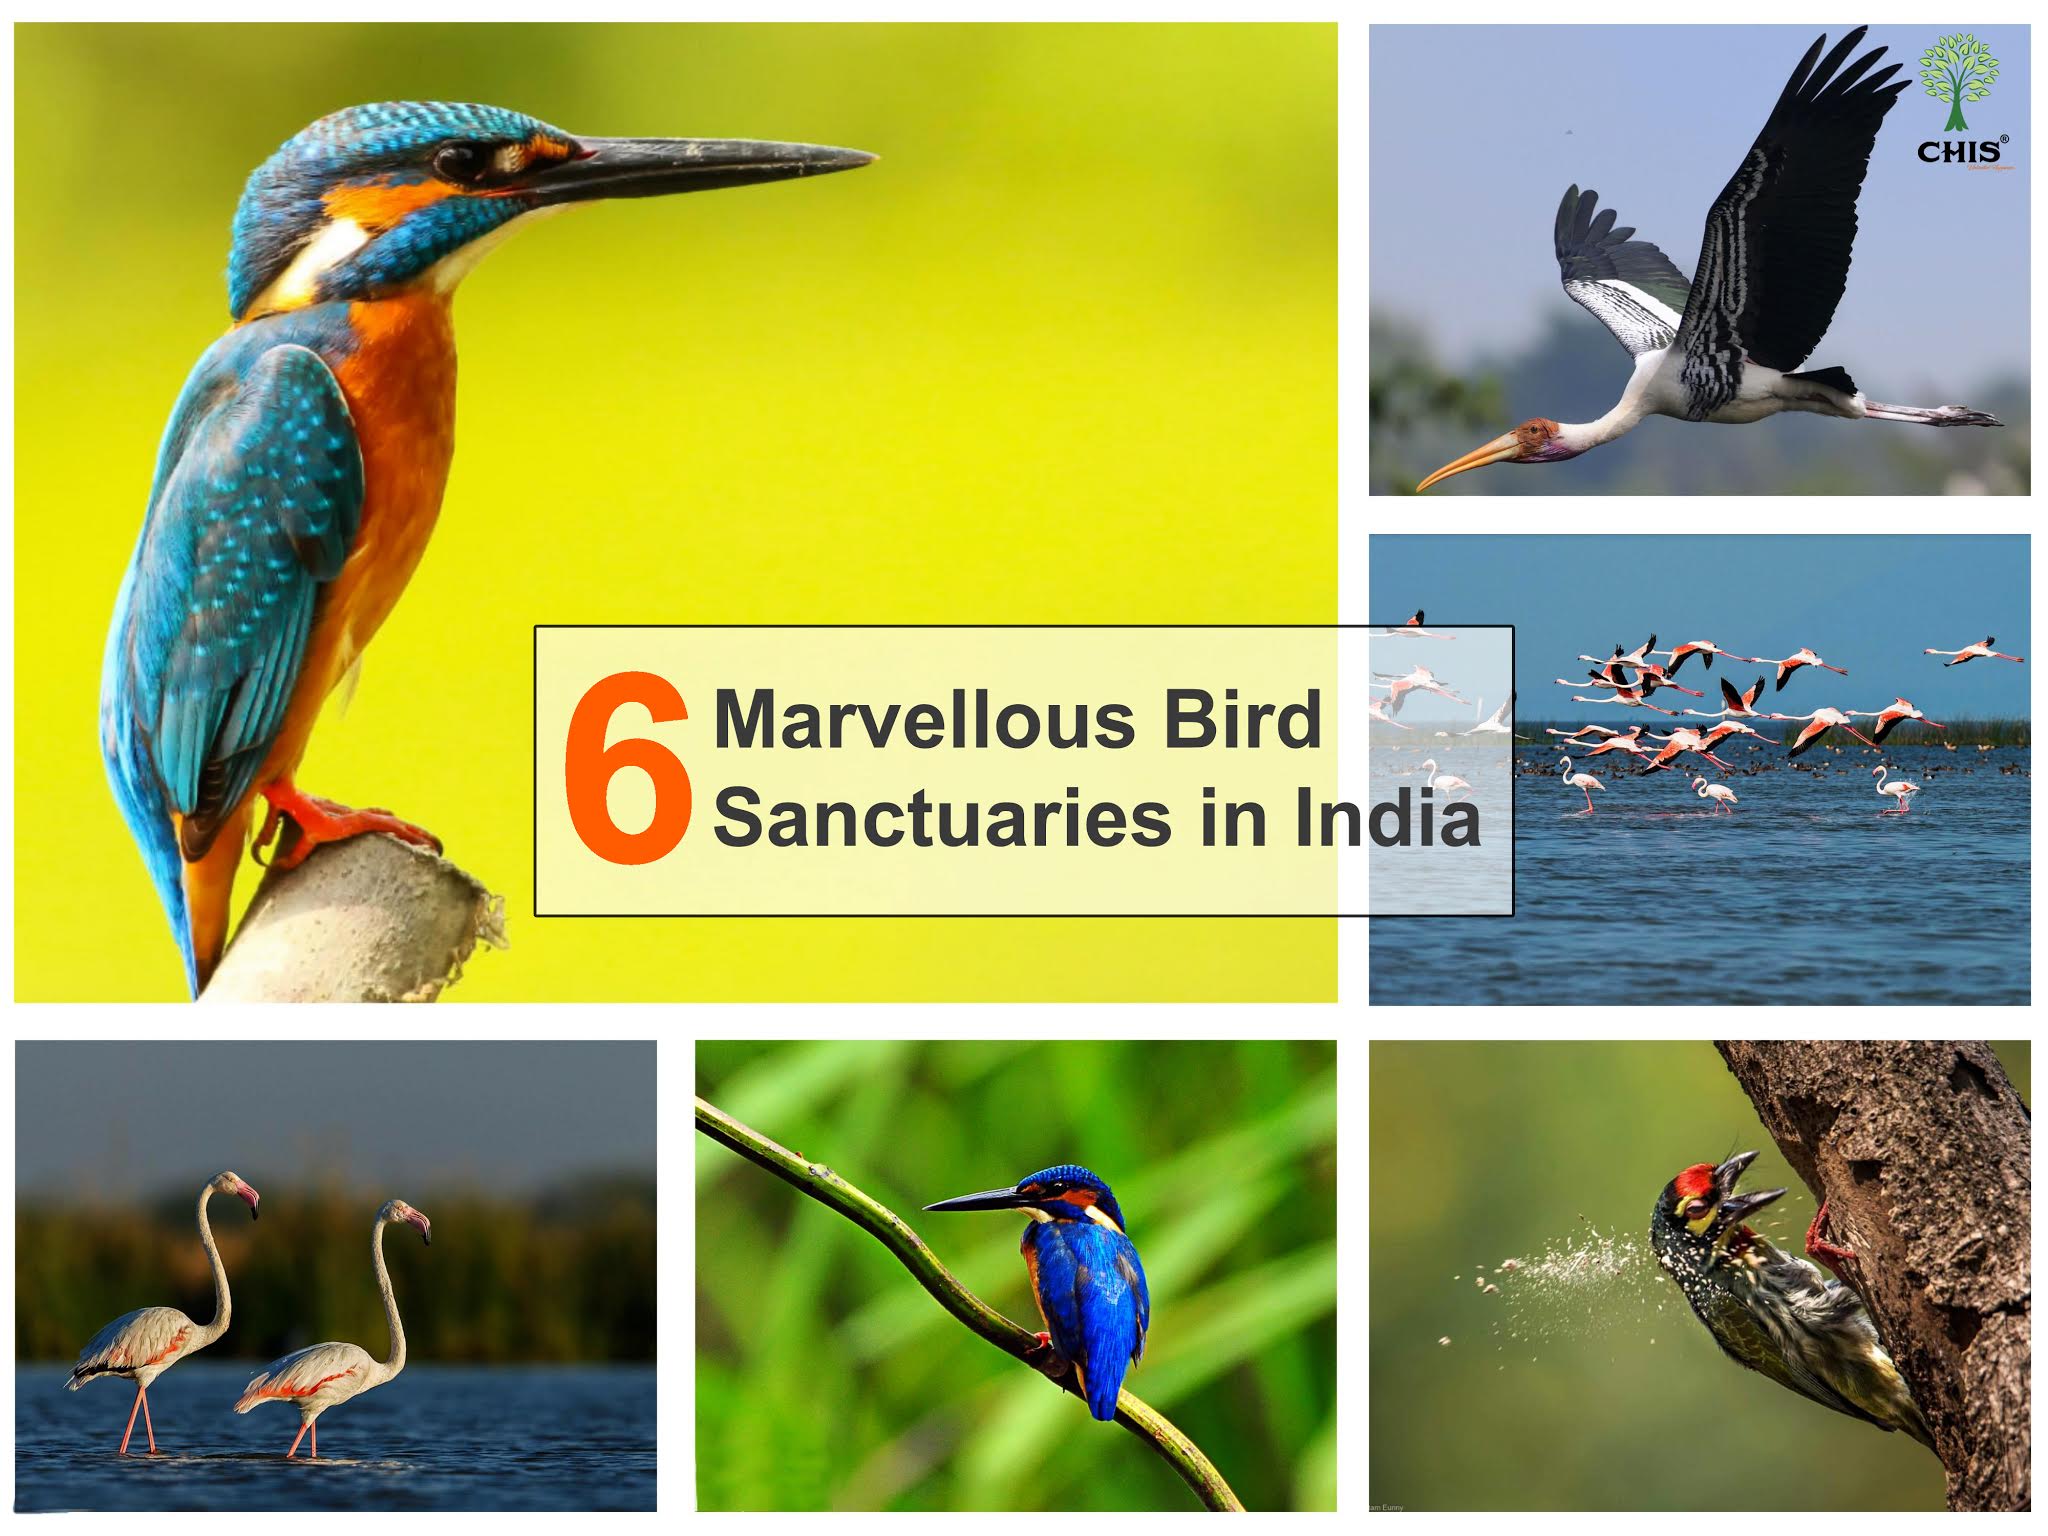 6 Marvellous Bird Sanctuaries in India